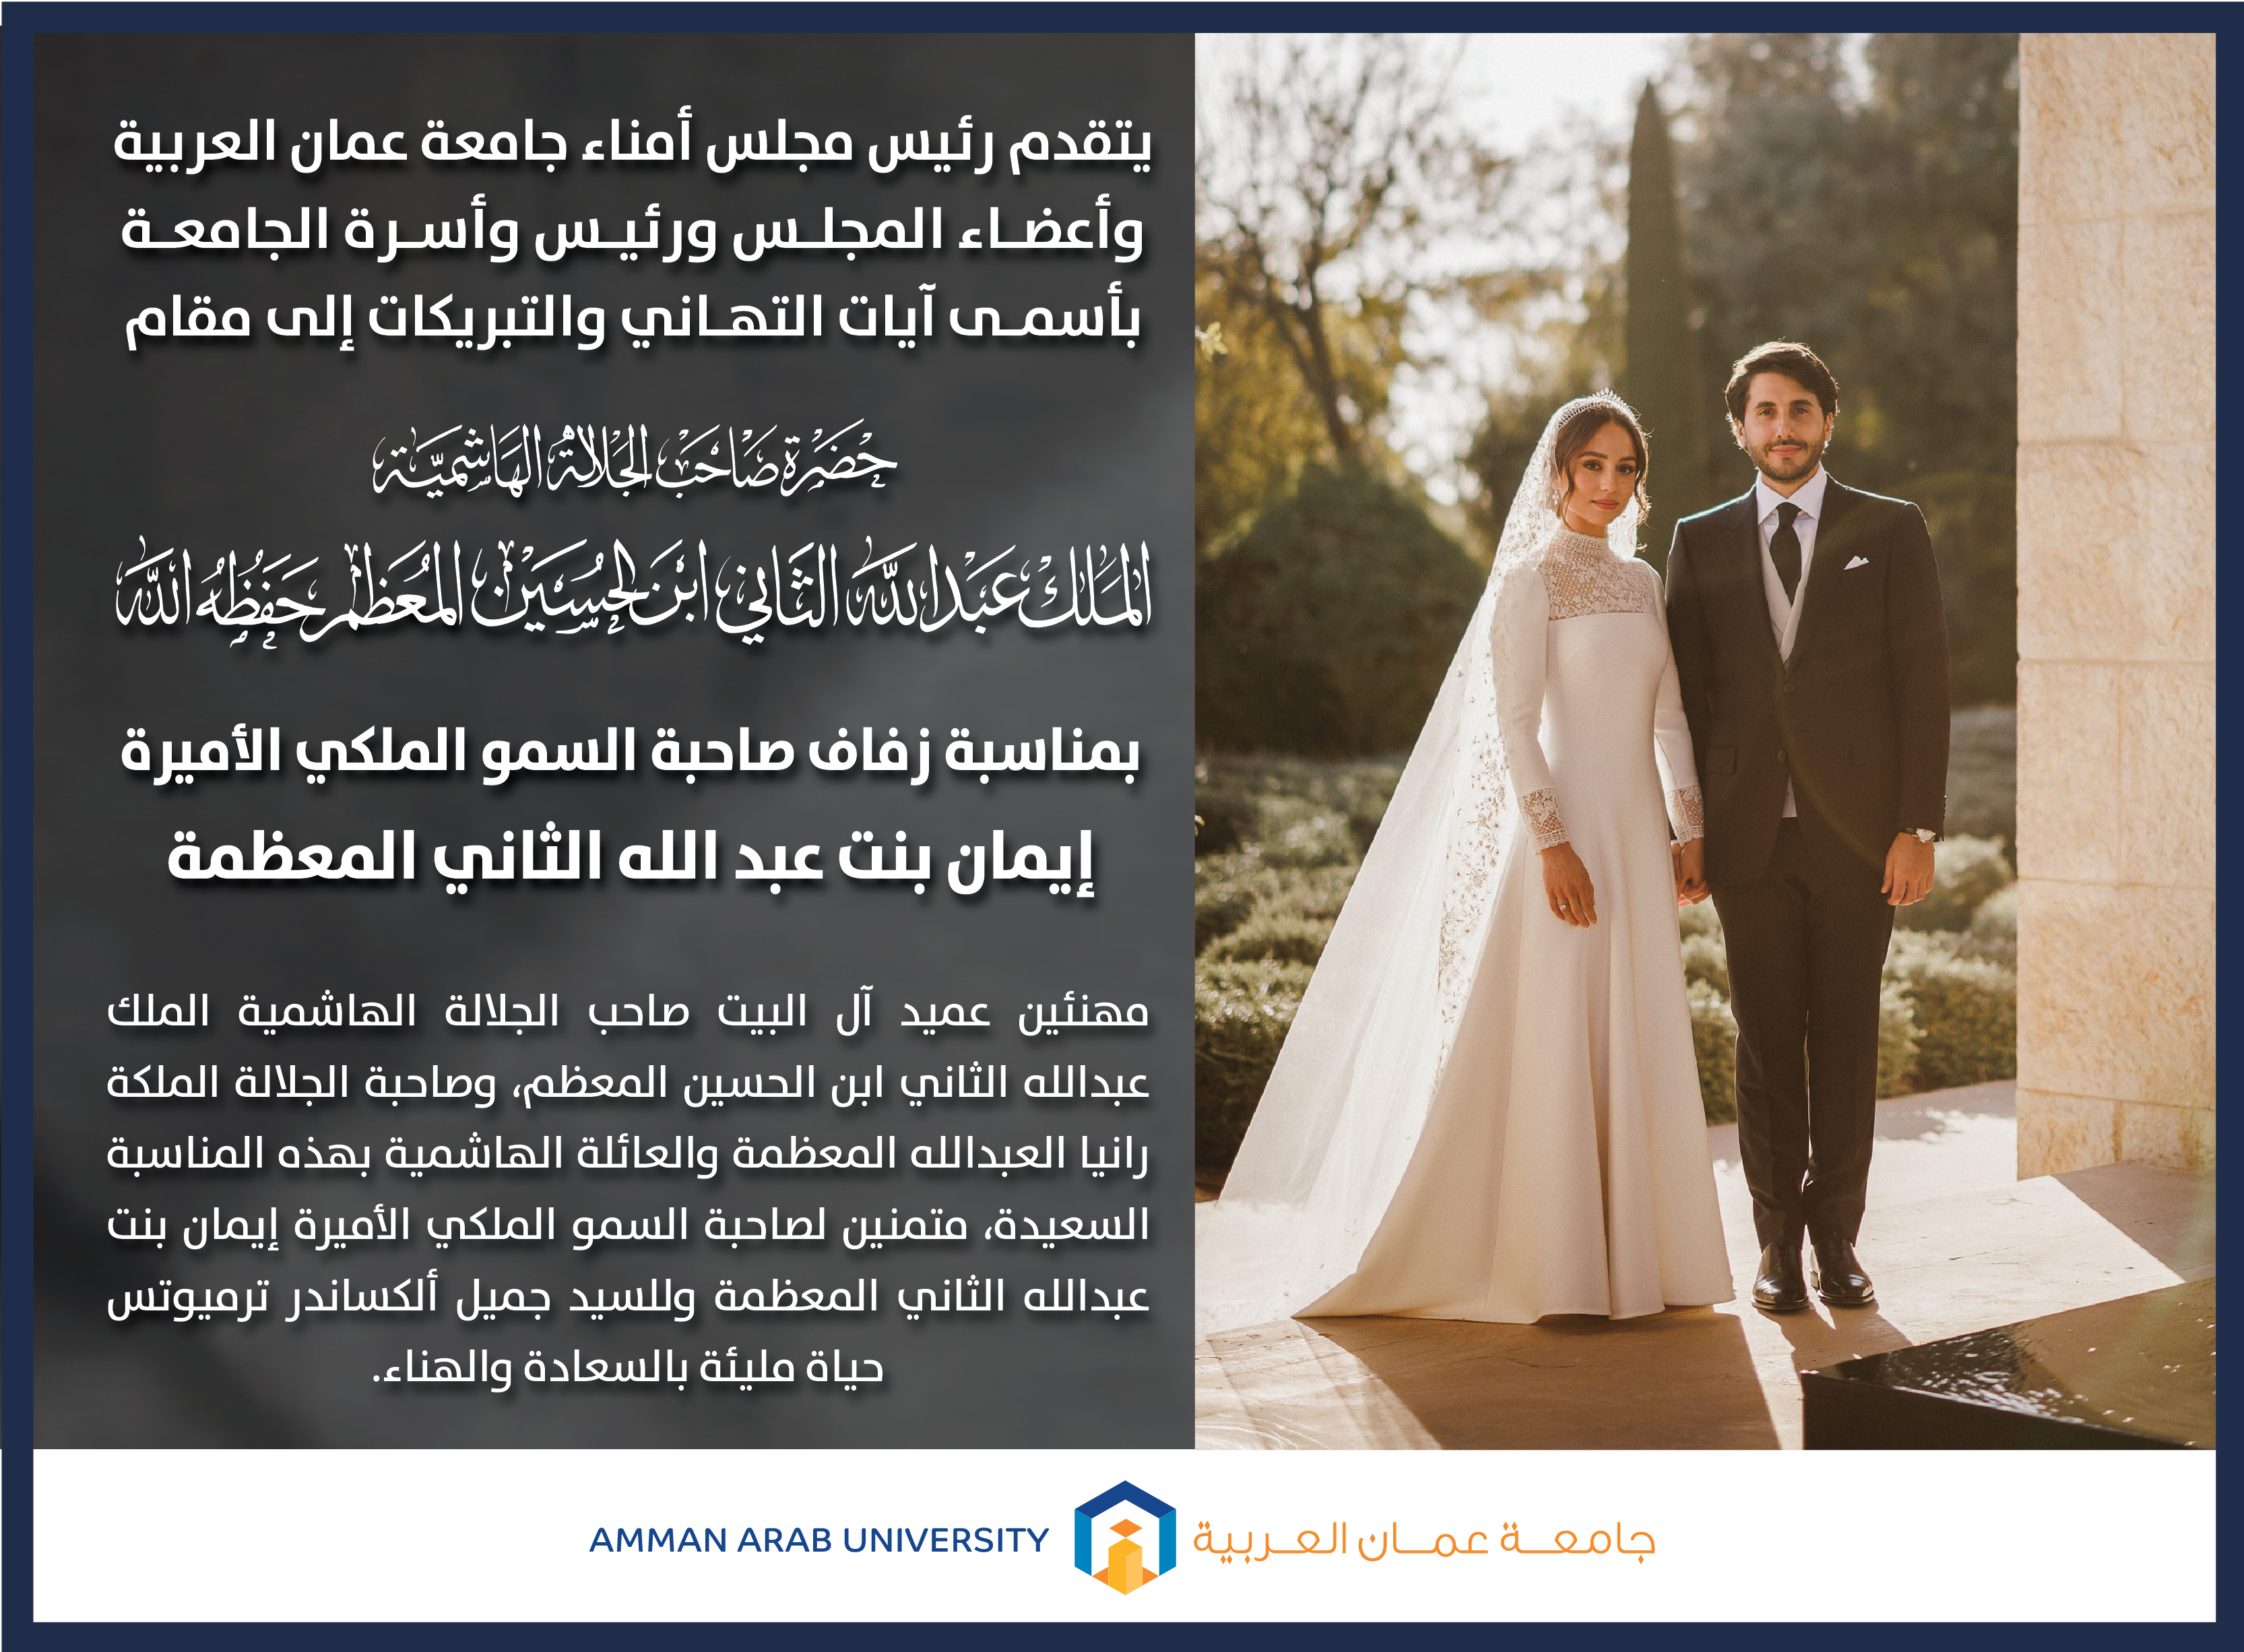 تهنئة بمناسبة زفاف صاحبة السمو الملكي الأميرة إيمان بنت عبد الله الثاني المعظمة